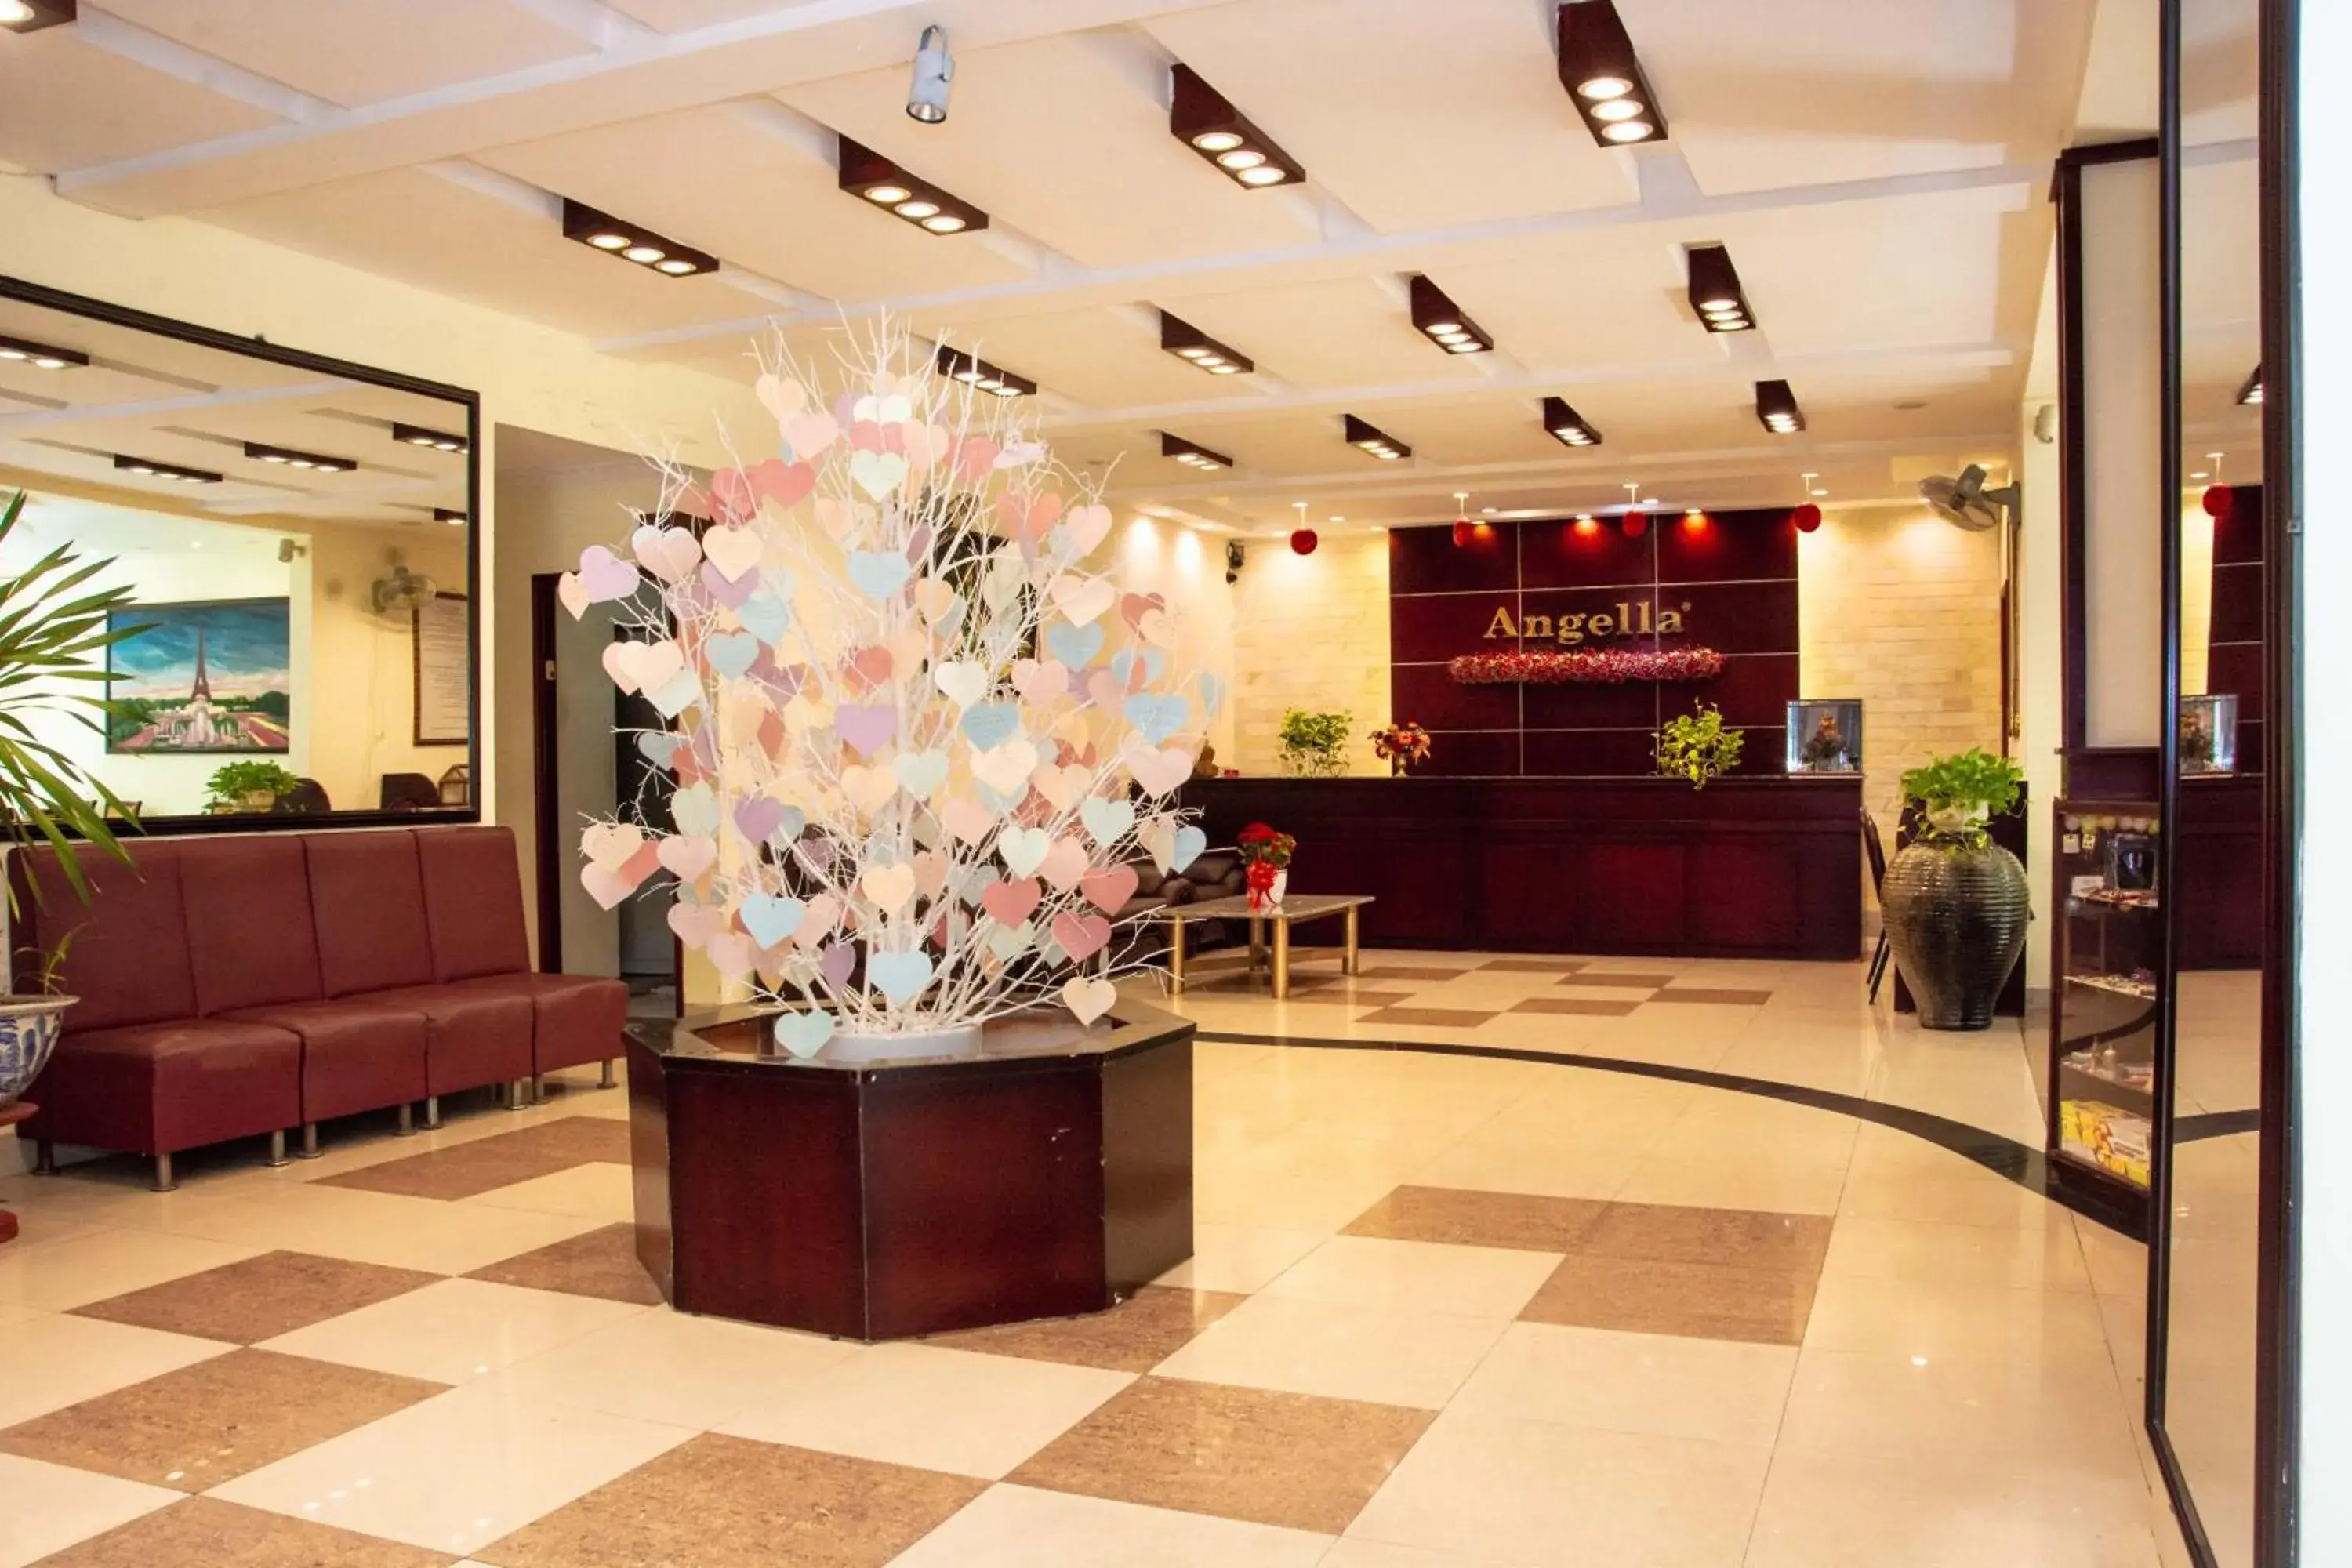 Lobby or reception, Lobby/Reception in Angella Hotel Nha Trang